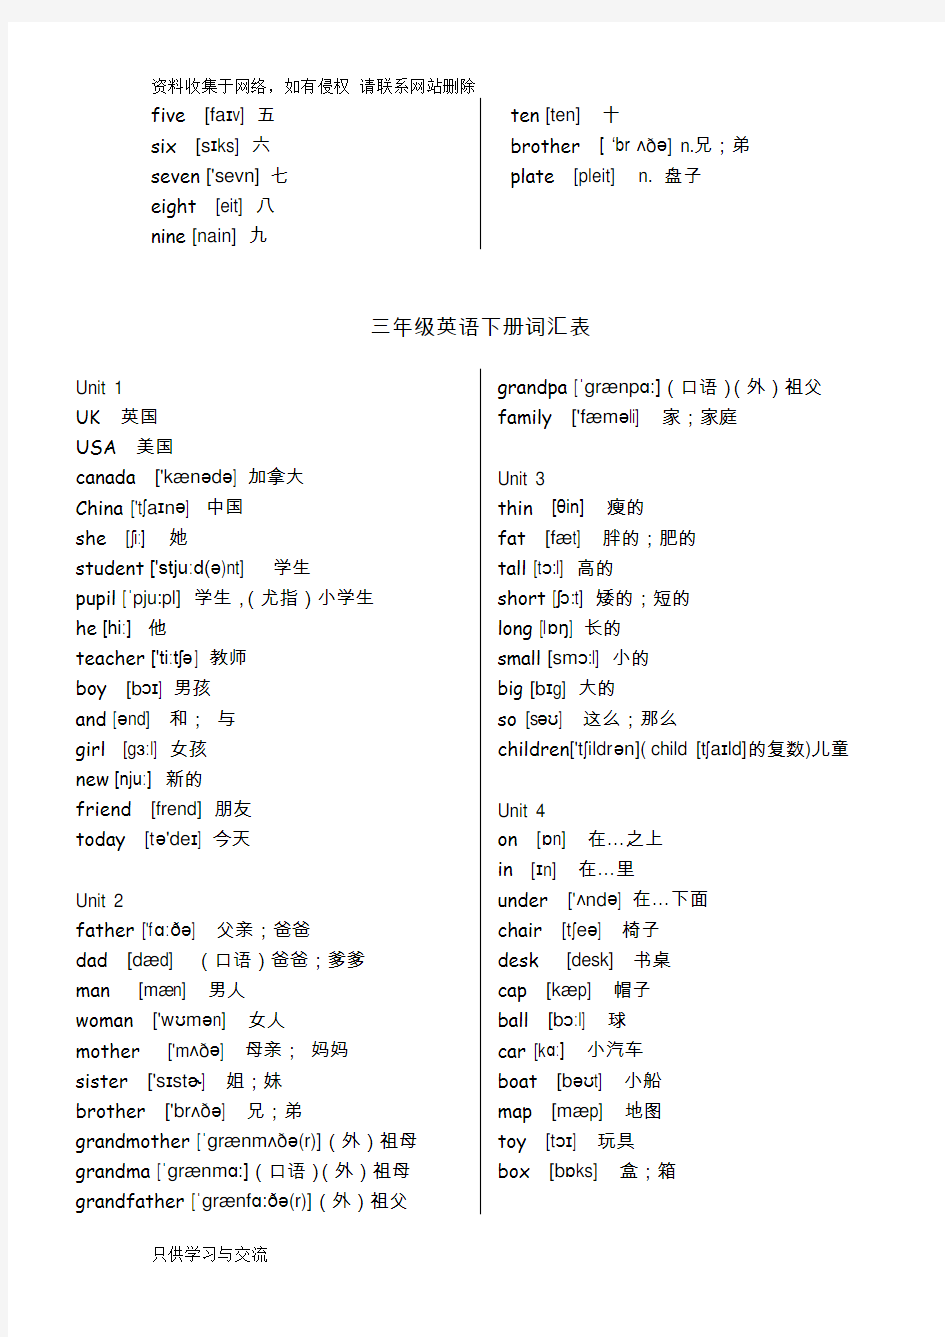 新版PEP小学英语(3-6年级)单词表